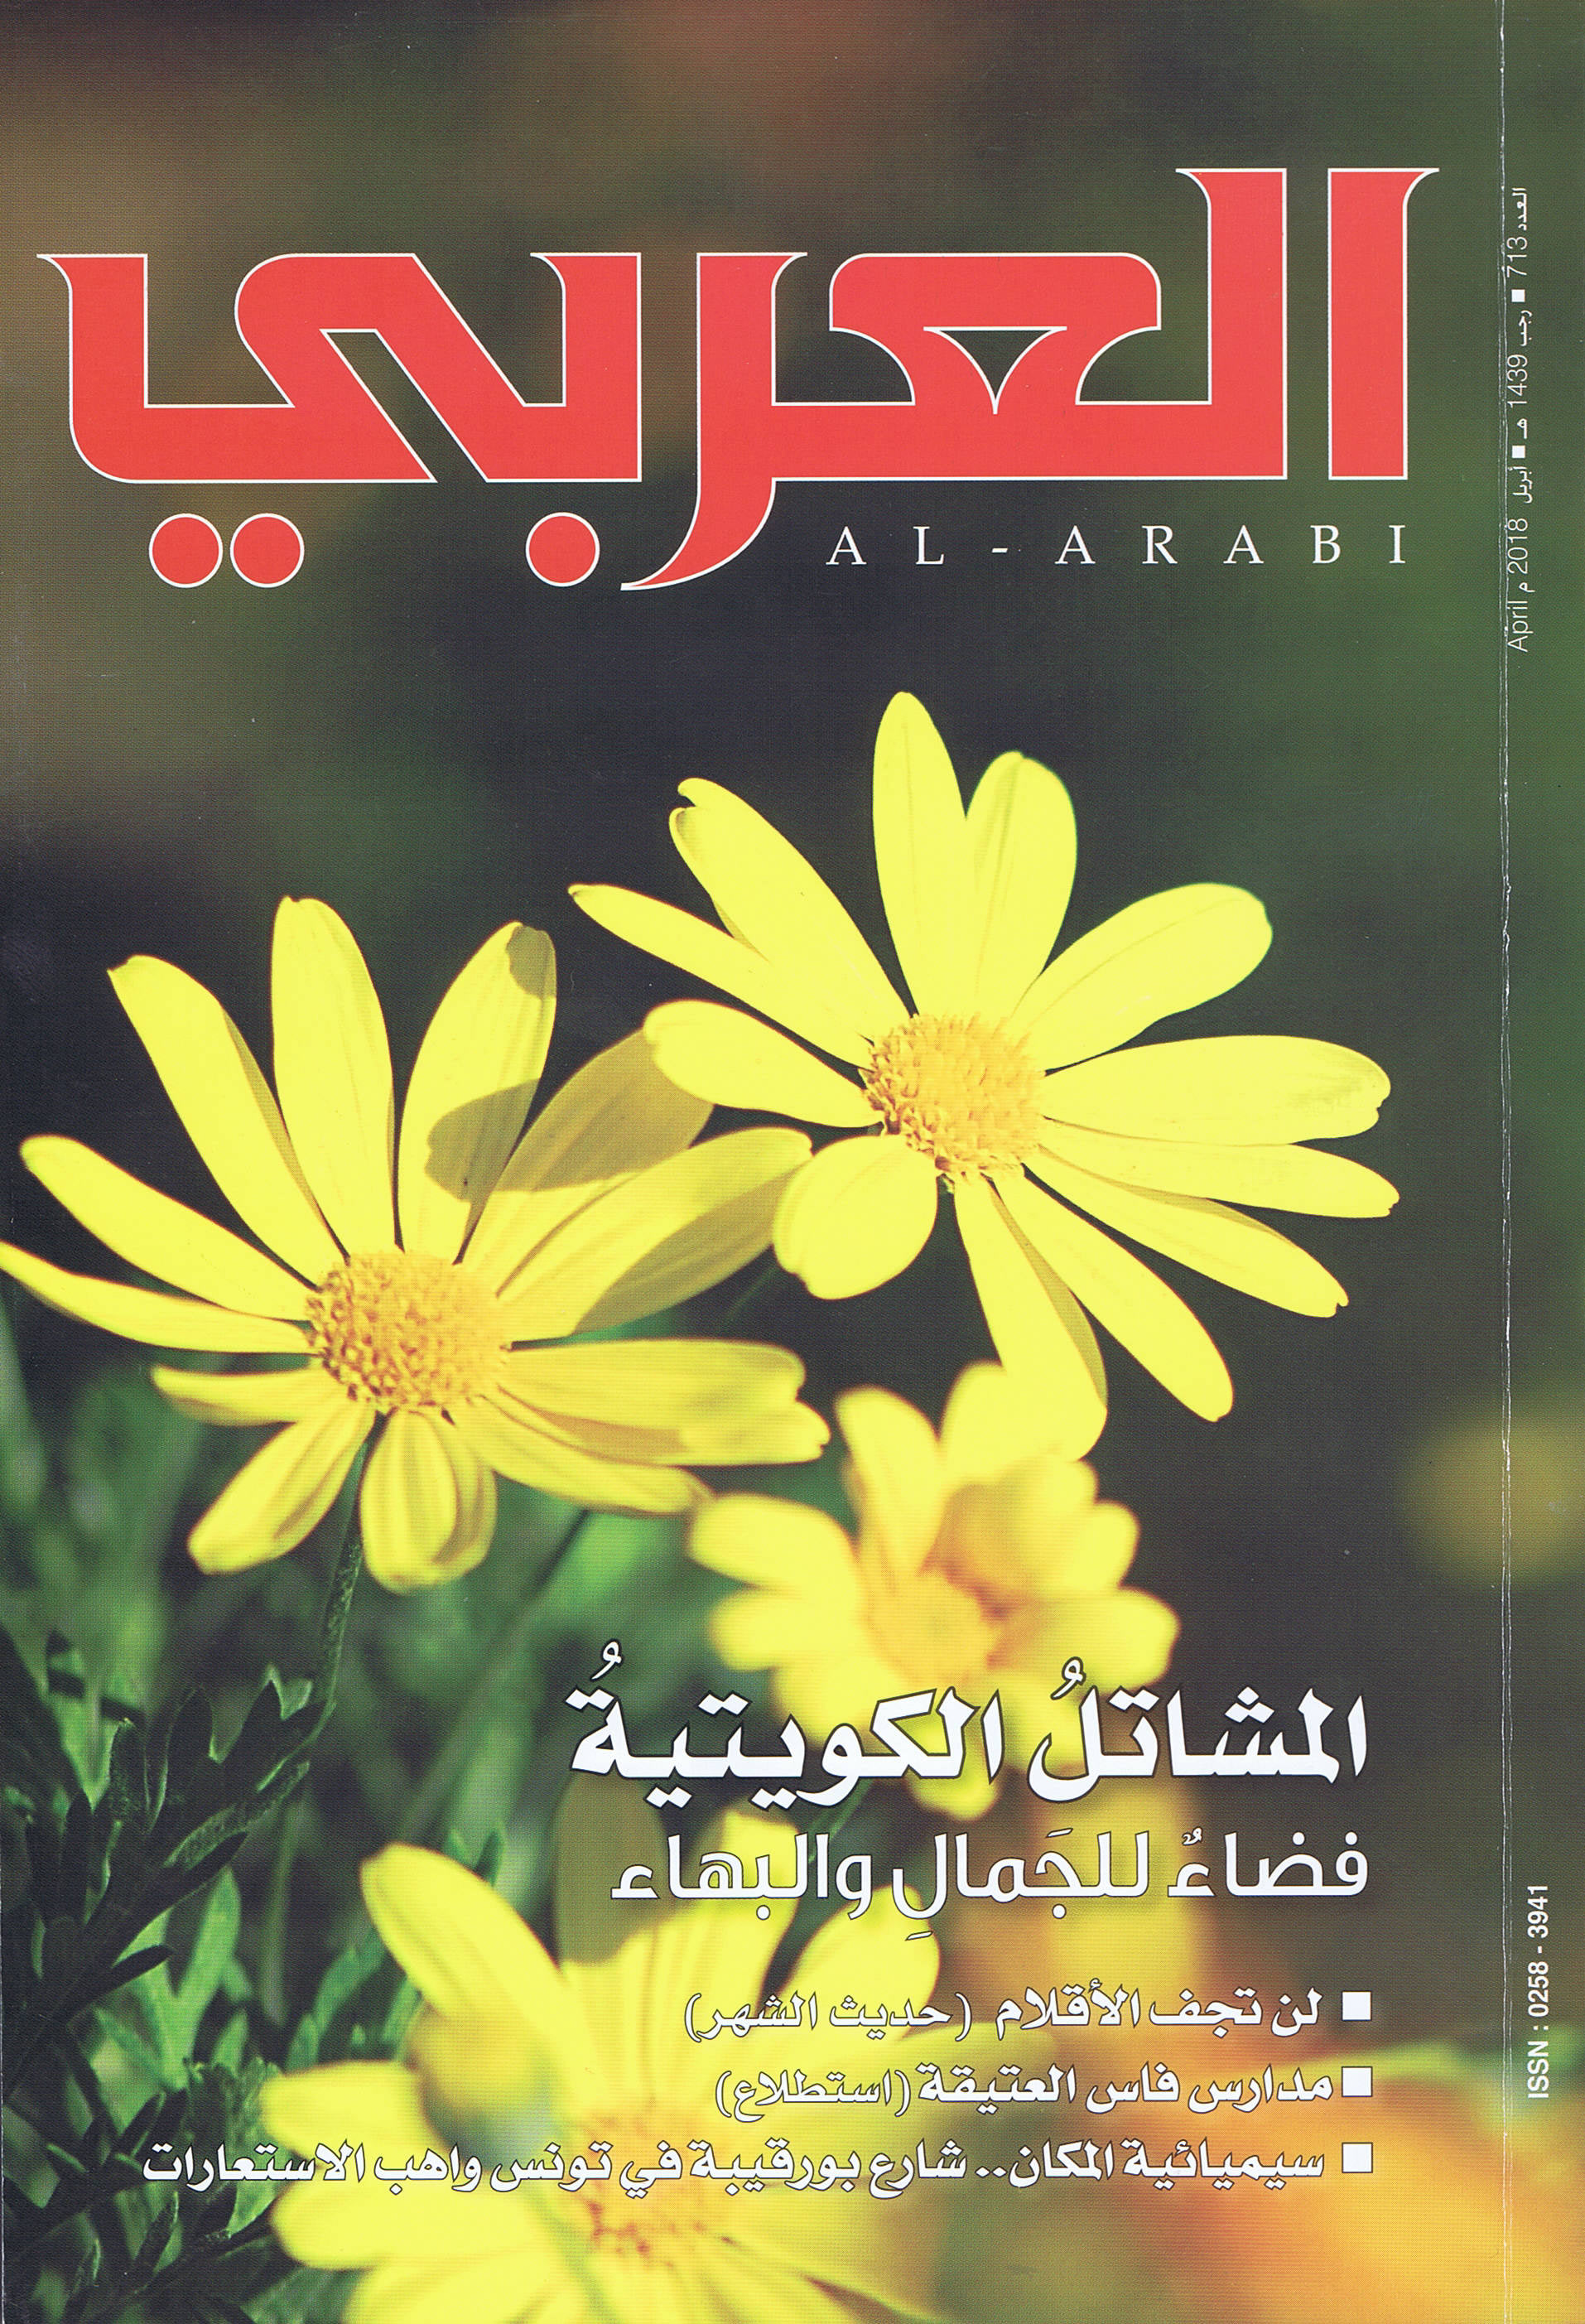 Alarabi April2018 cover